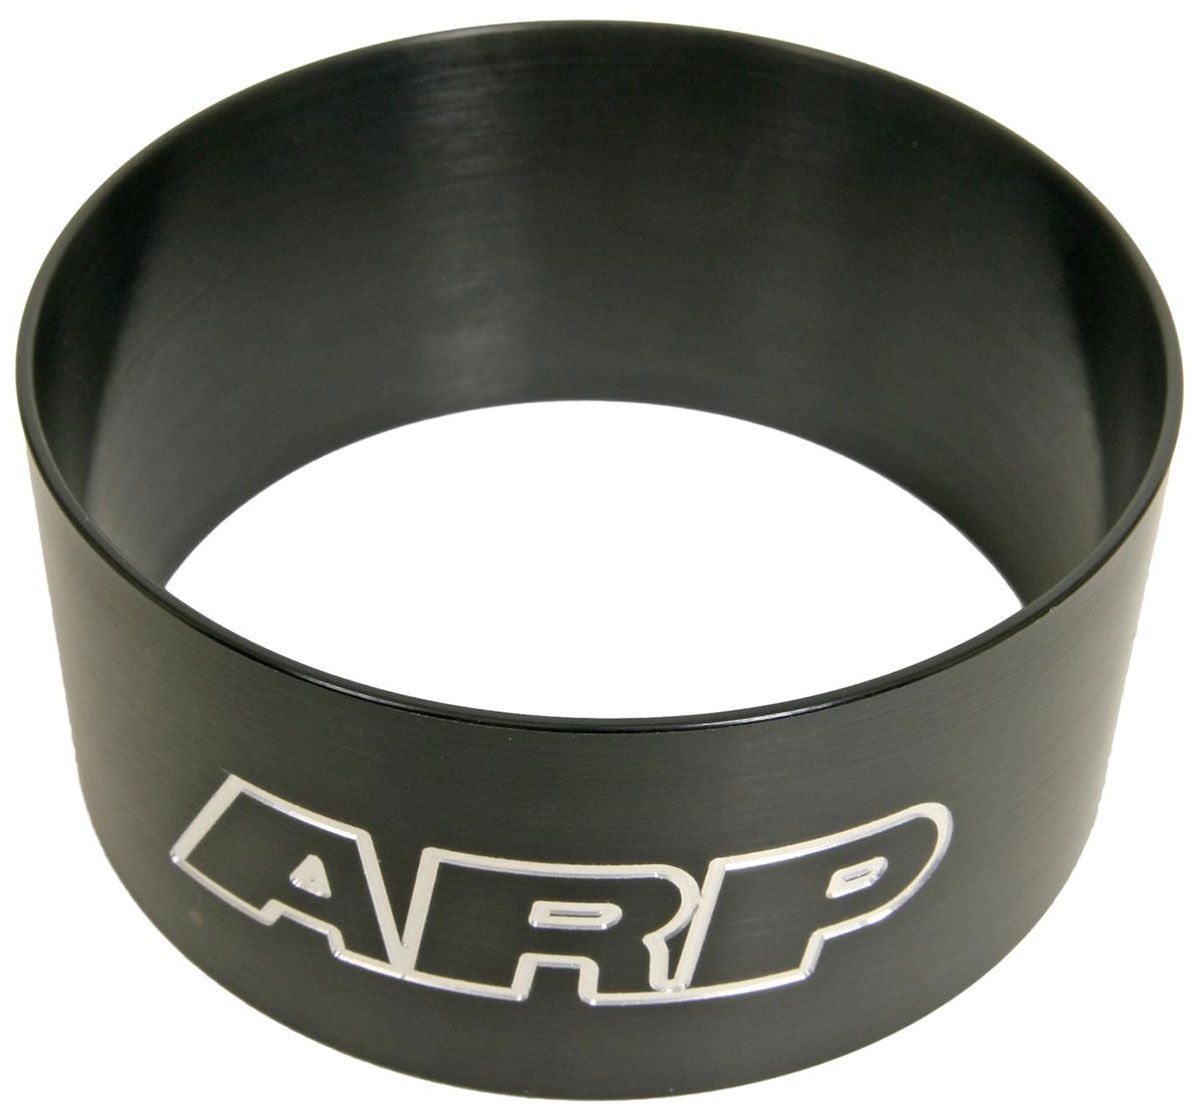 AR900-0000 - ARP RING COMPRESSOR 4.000